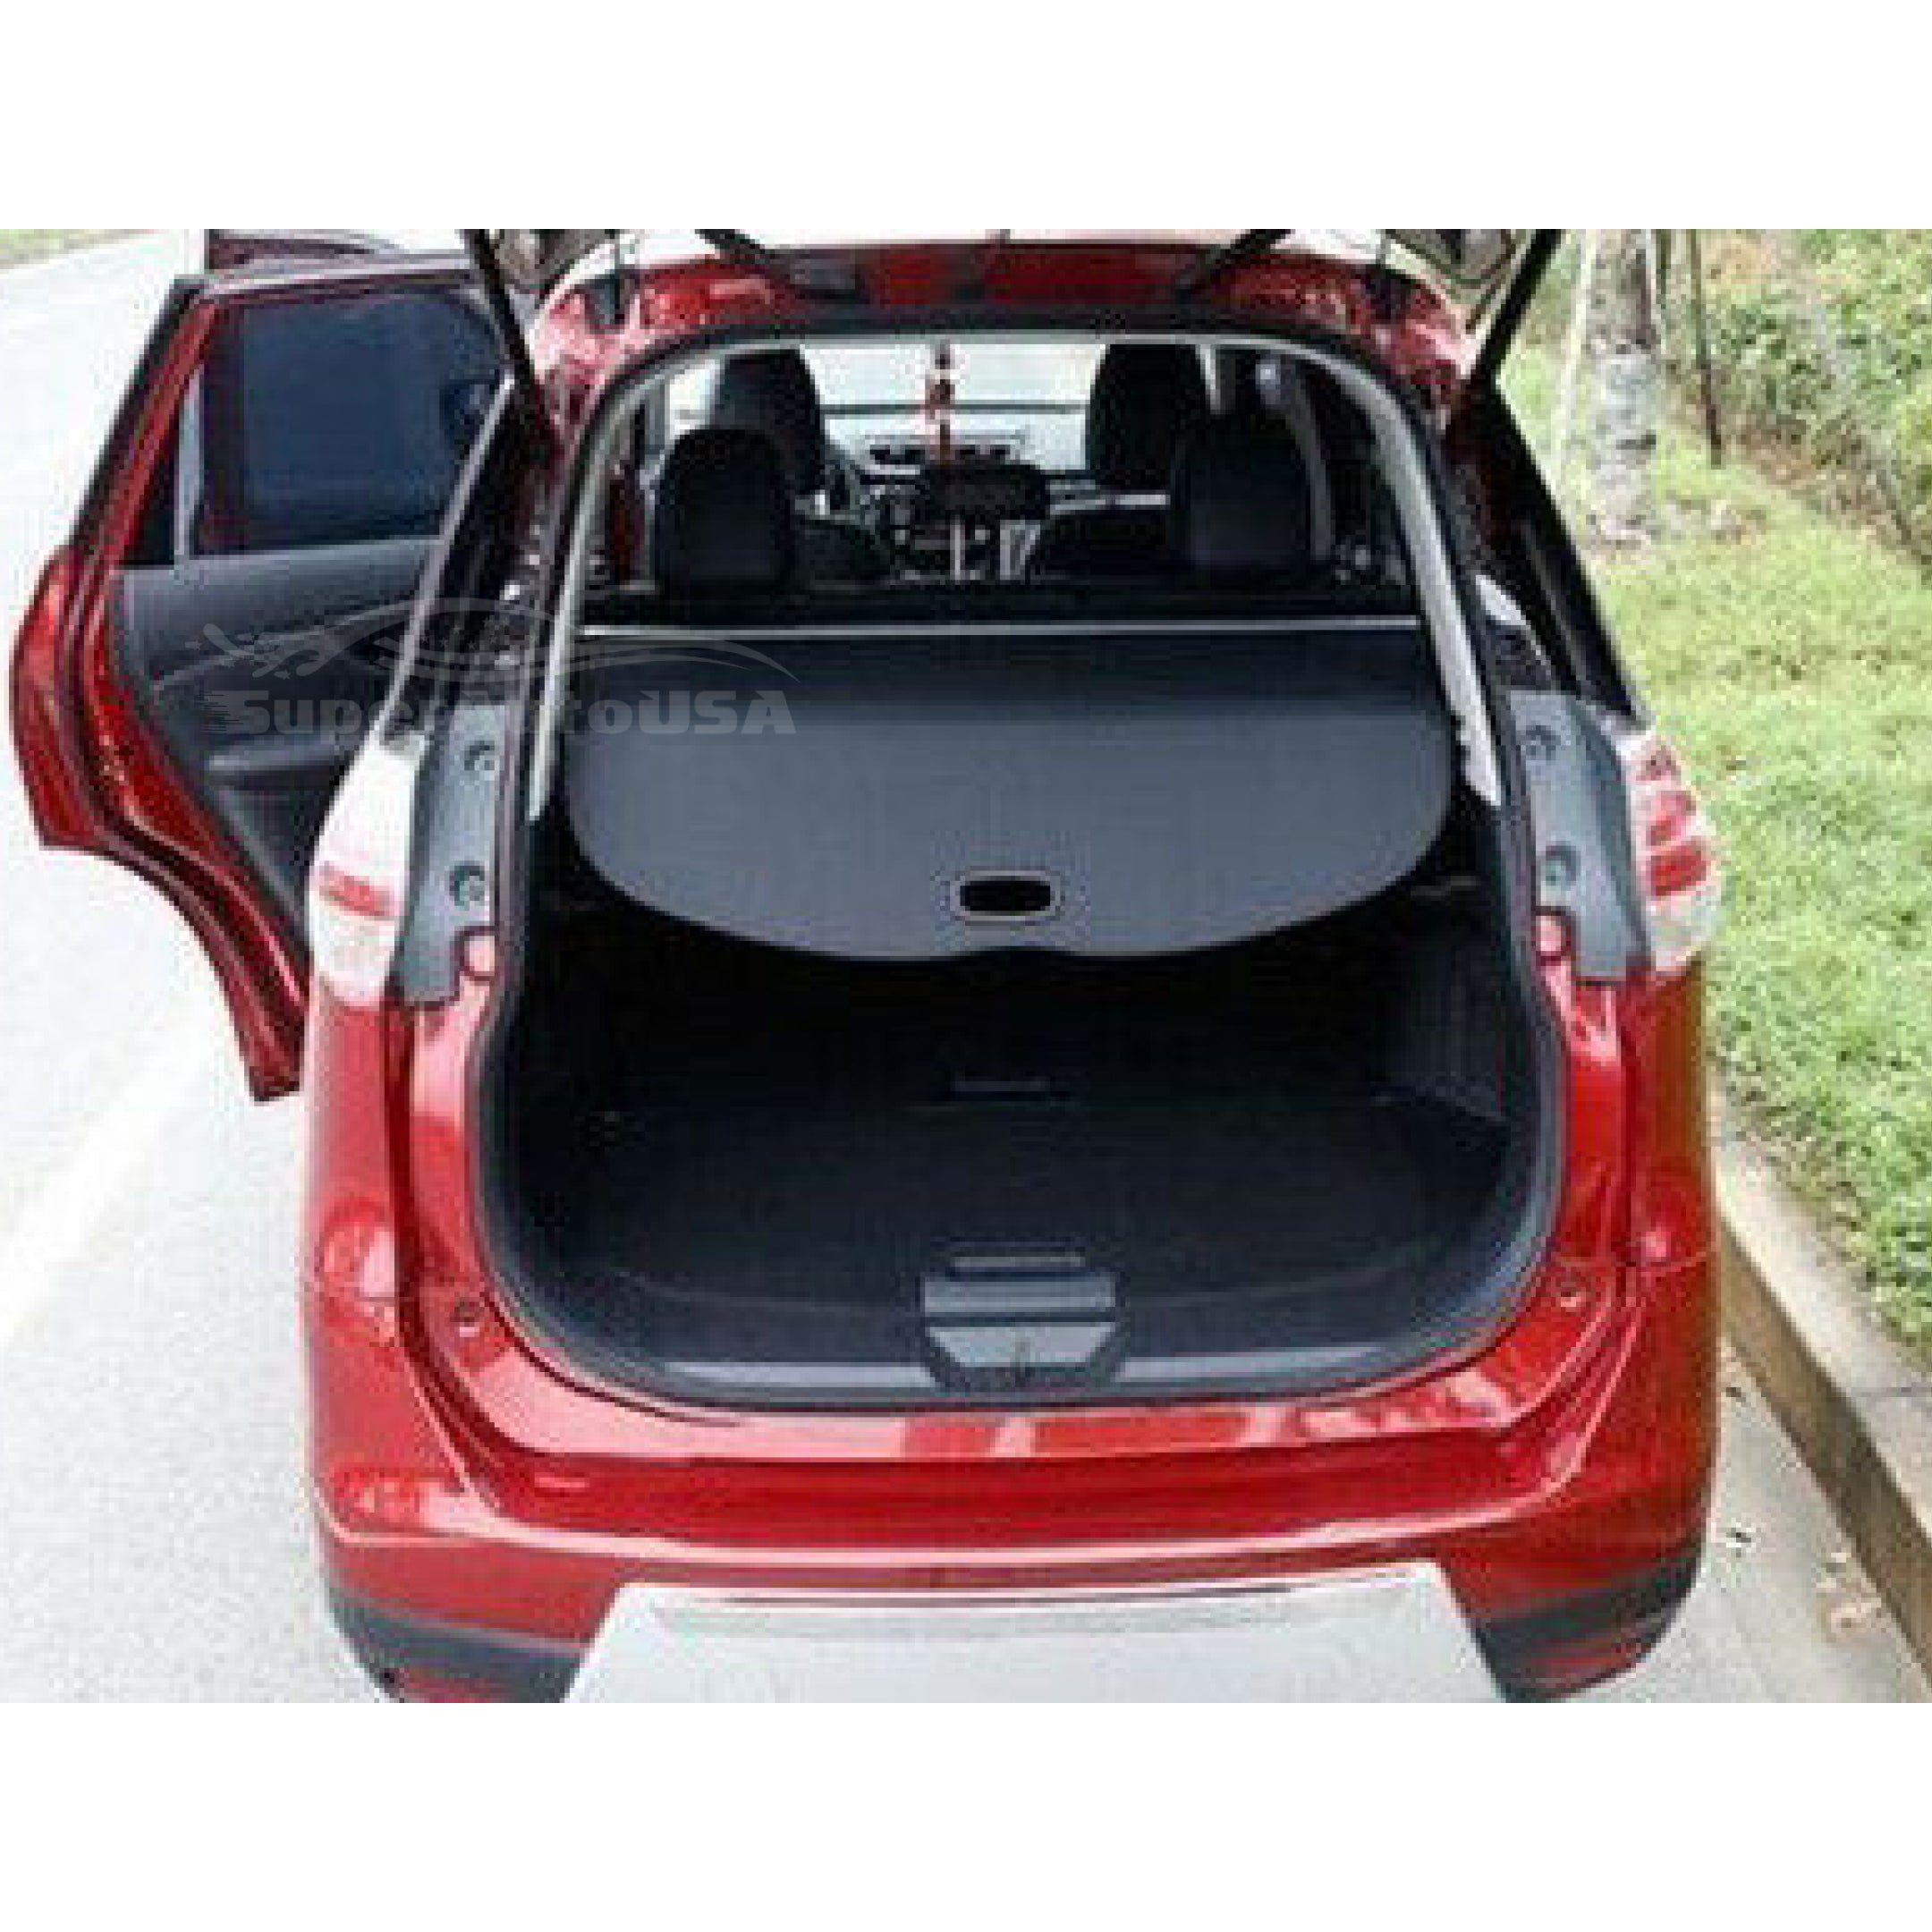 Se adapta a la cubierta de carga Tonneau retráctil del maletero trasero del equipaje Subaru Outback 2015-2019 (negro) - 0